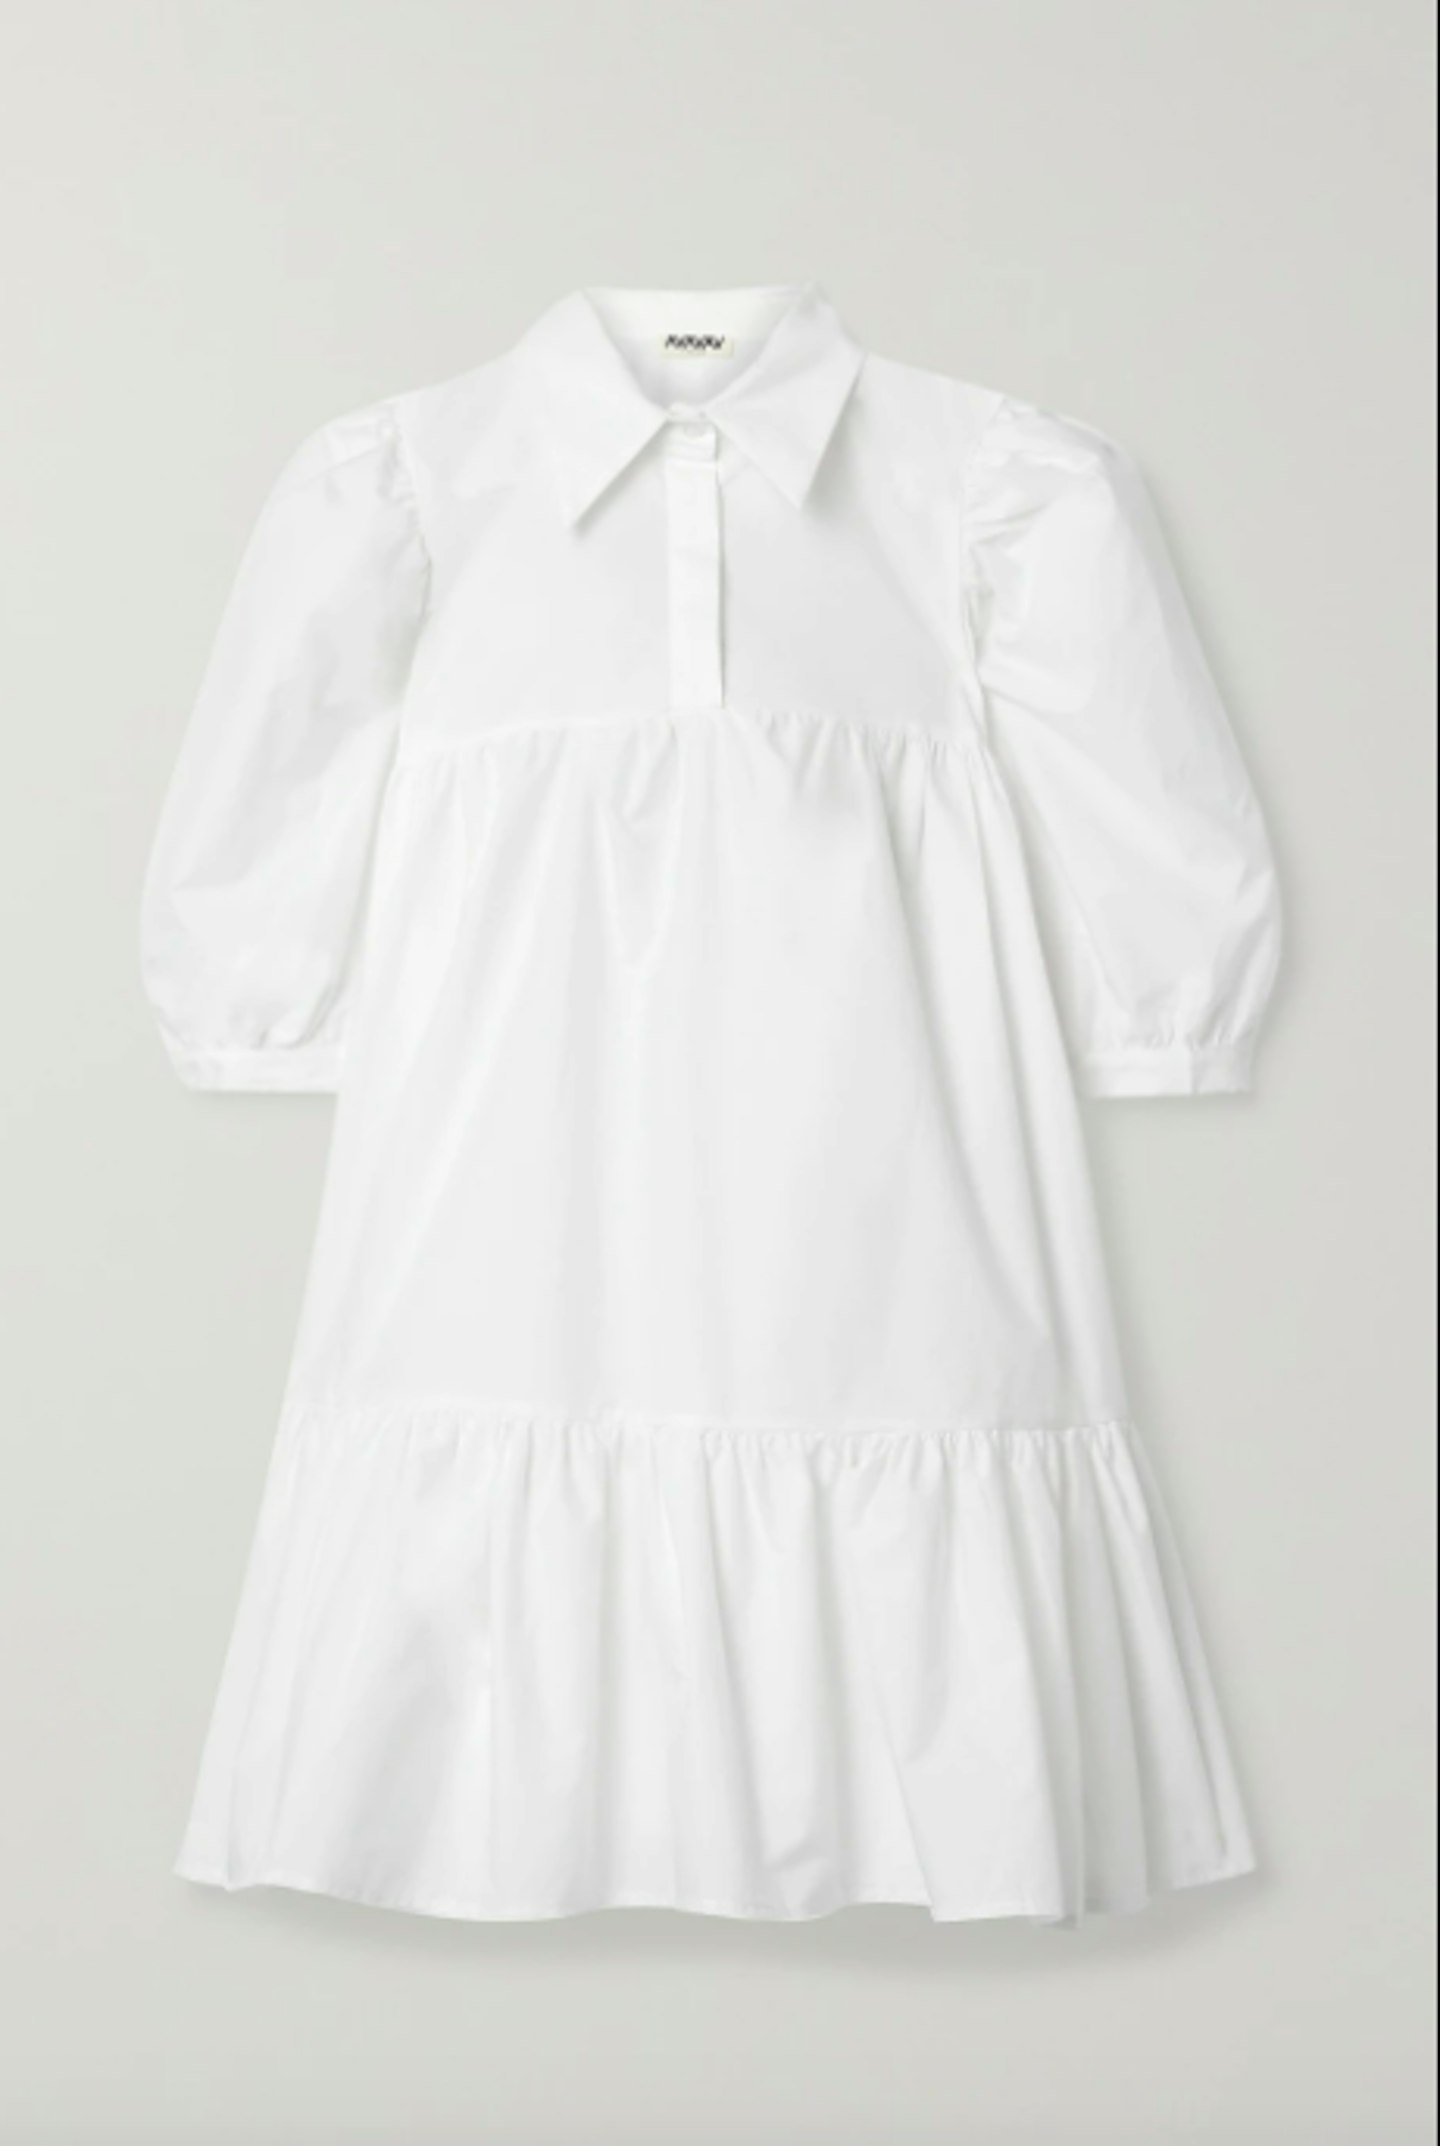 AVAVAV, Ruffed Cotton Poplin Mini Dress, £245